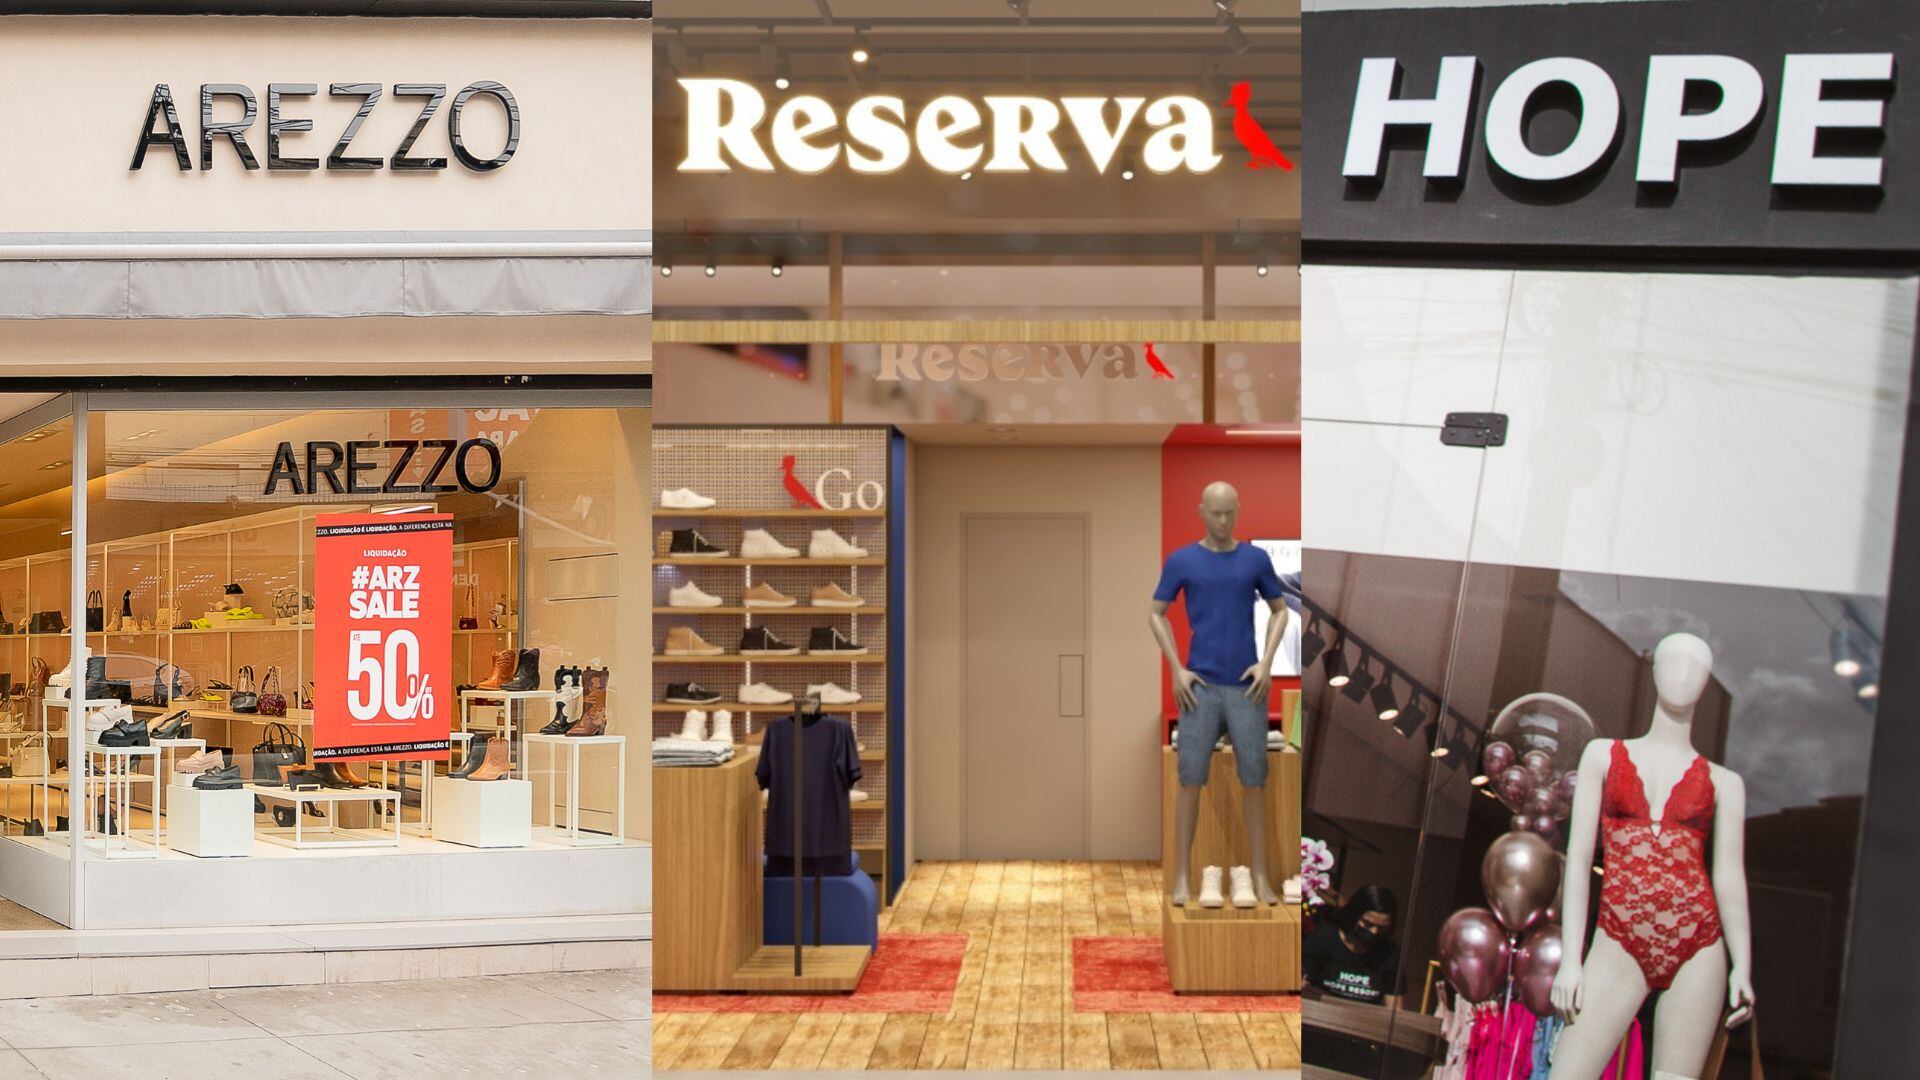 Fachadas de lojas Arezzo, Reserva e Hope; as três marcas possuem unidades pensadas para cidades menores 